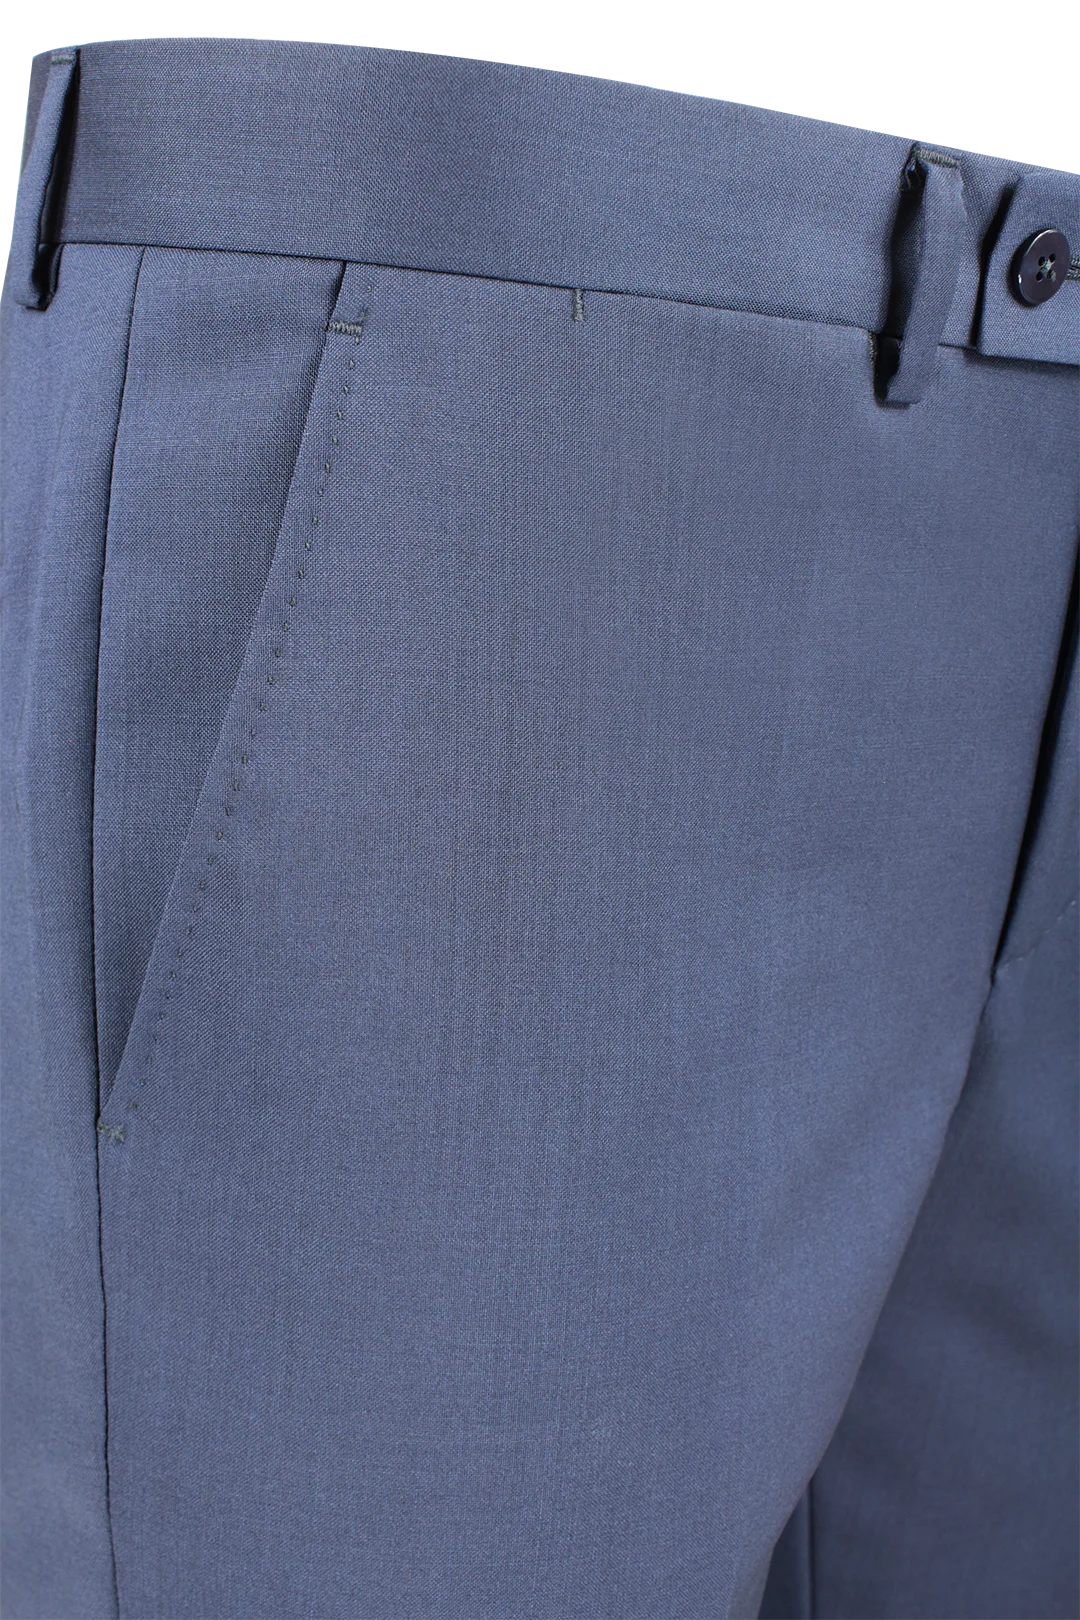 Pantalone in tela di lana vergine bluette tasca